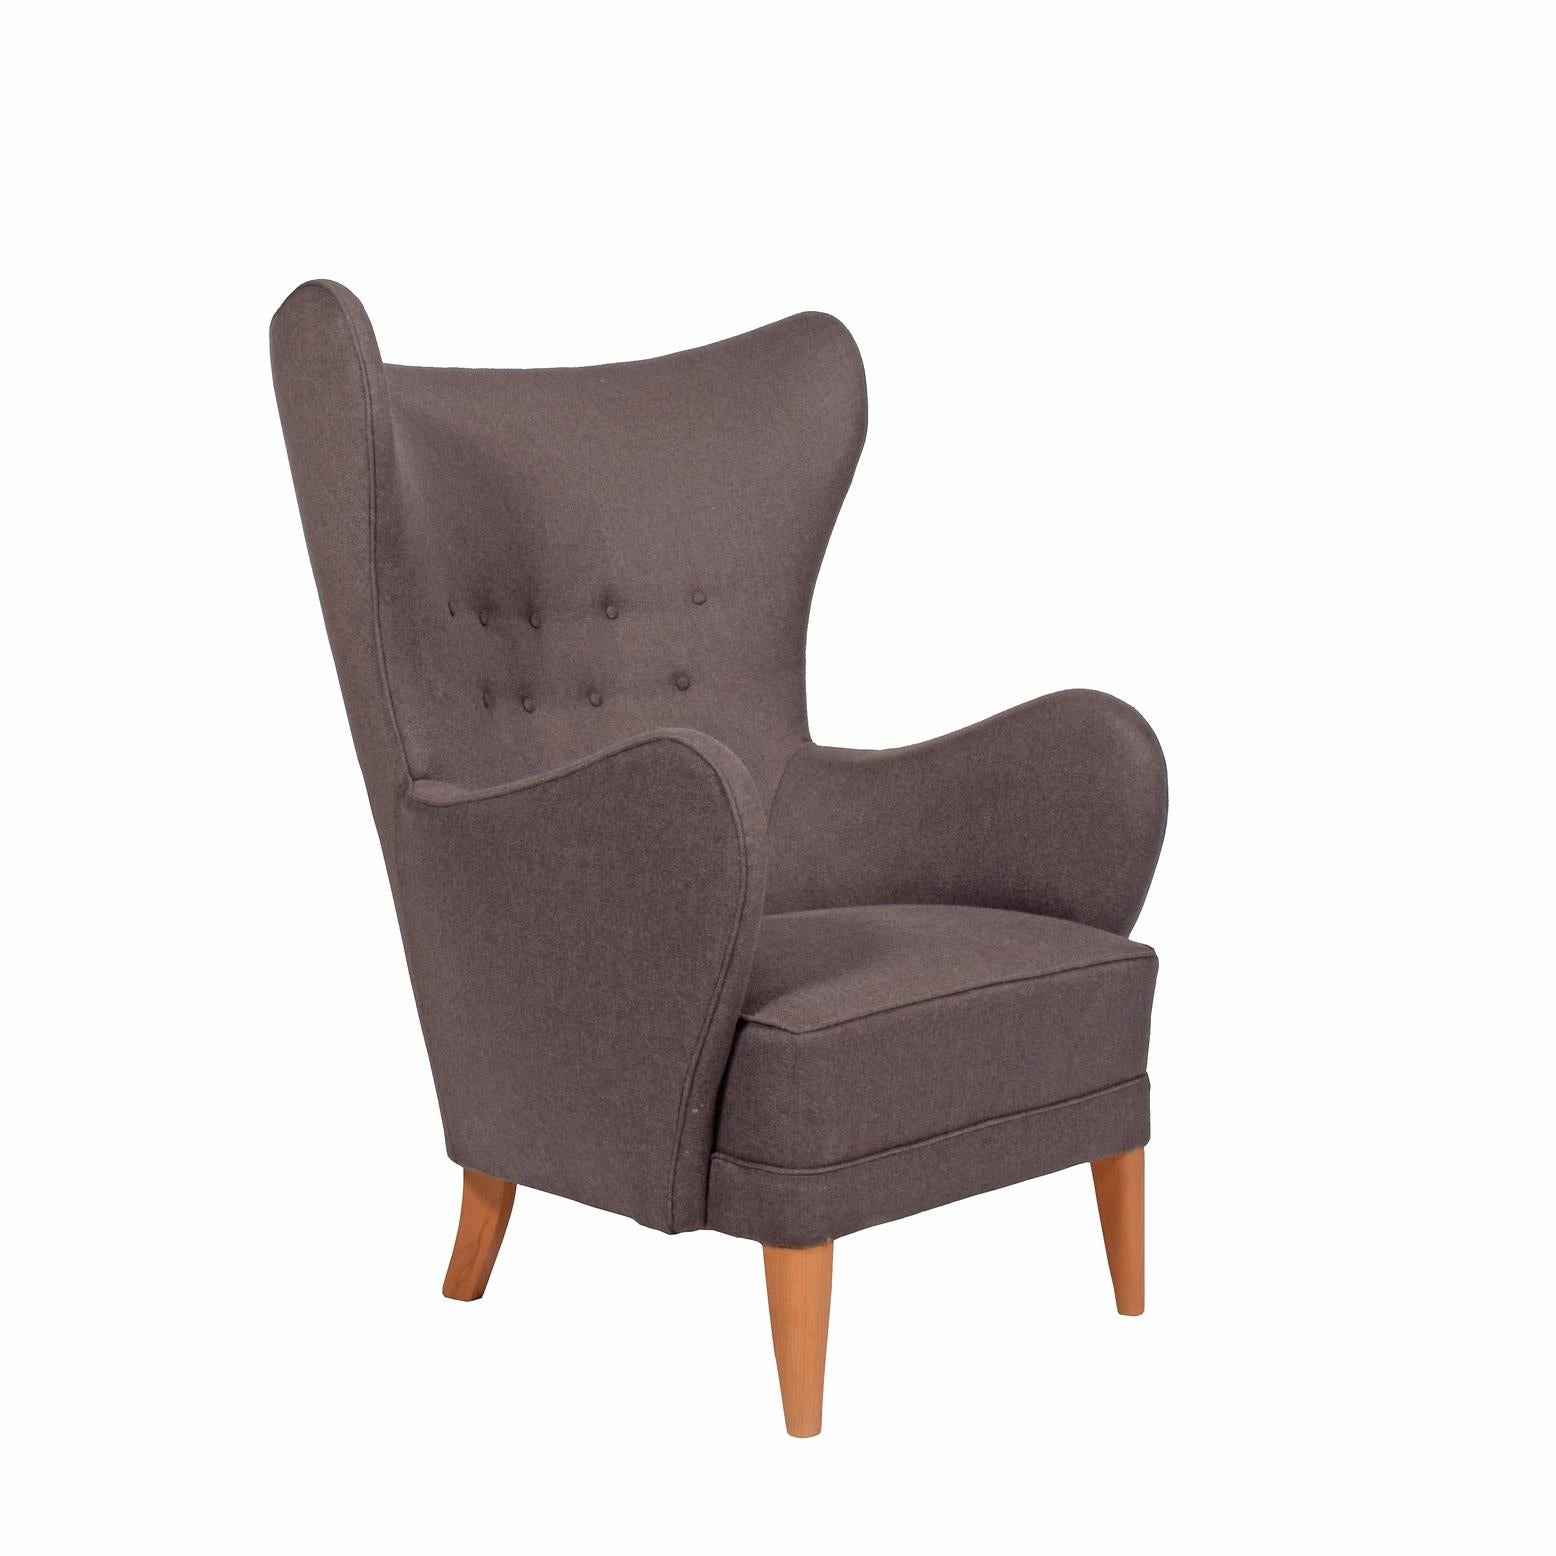 Scandinavian Modern 1940s Lounge Chair Flemming Lassen Attributed